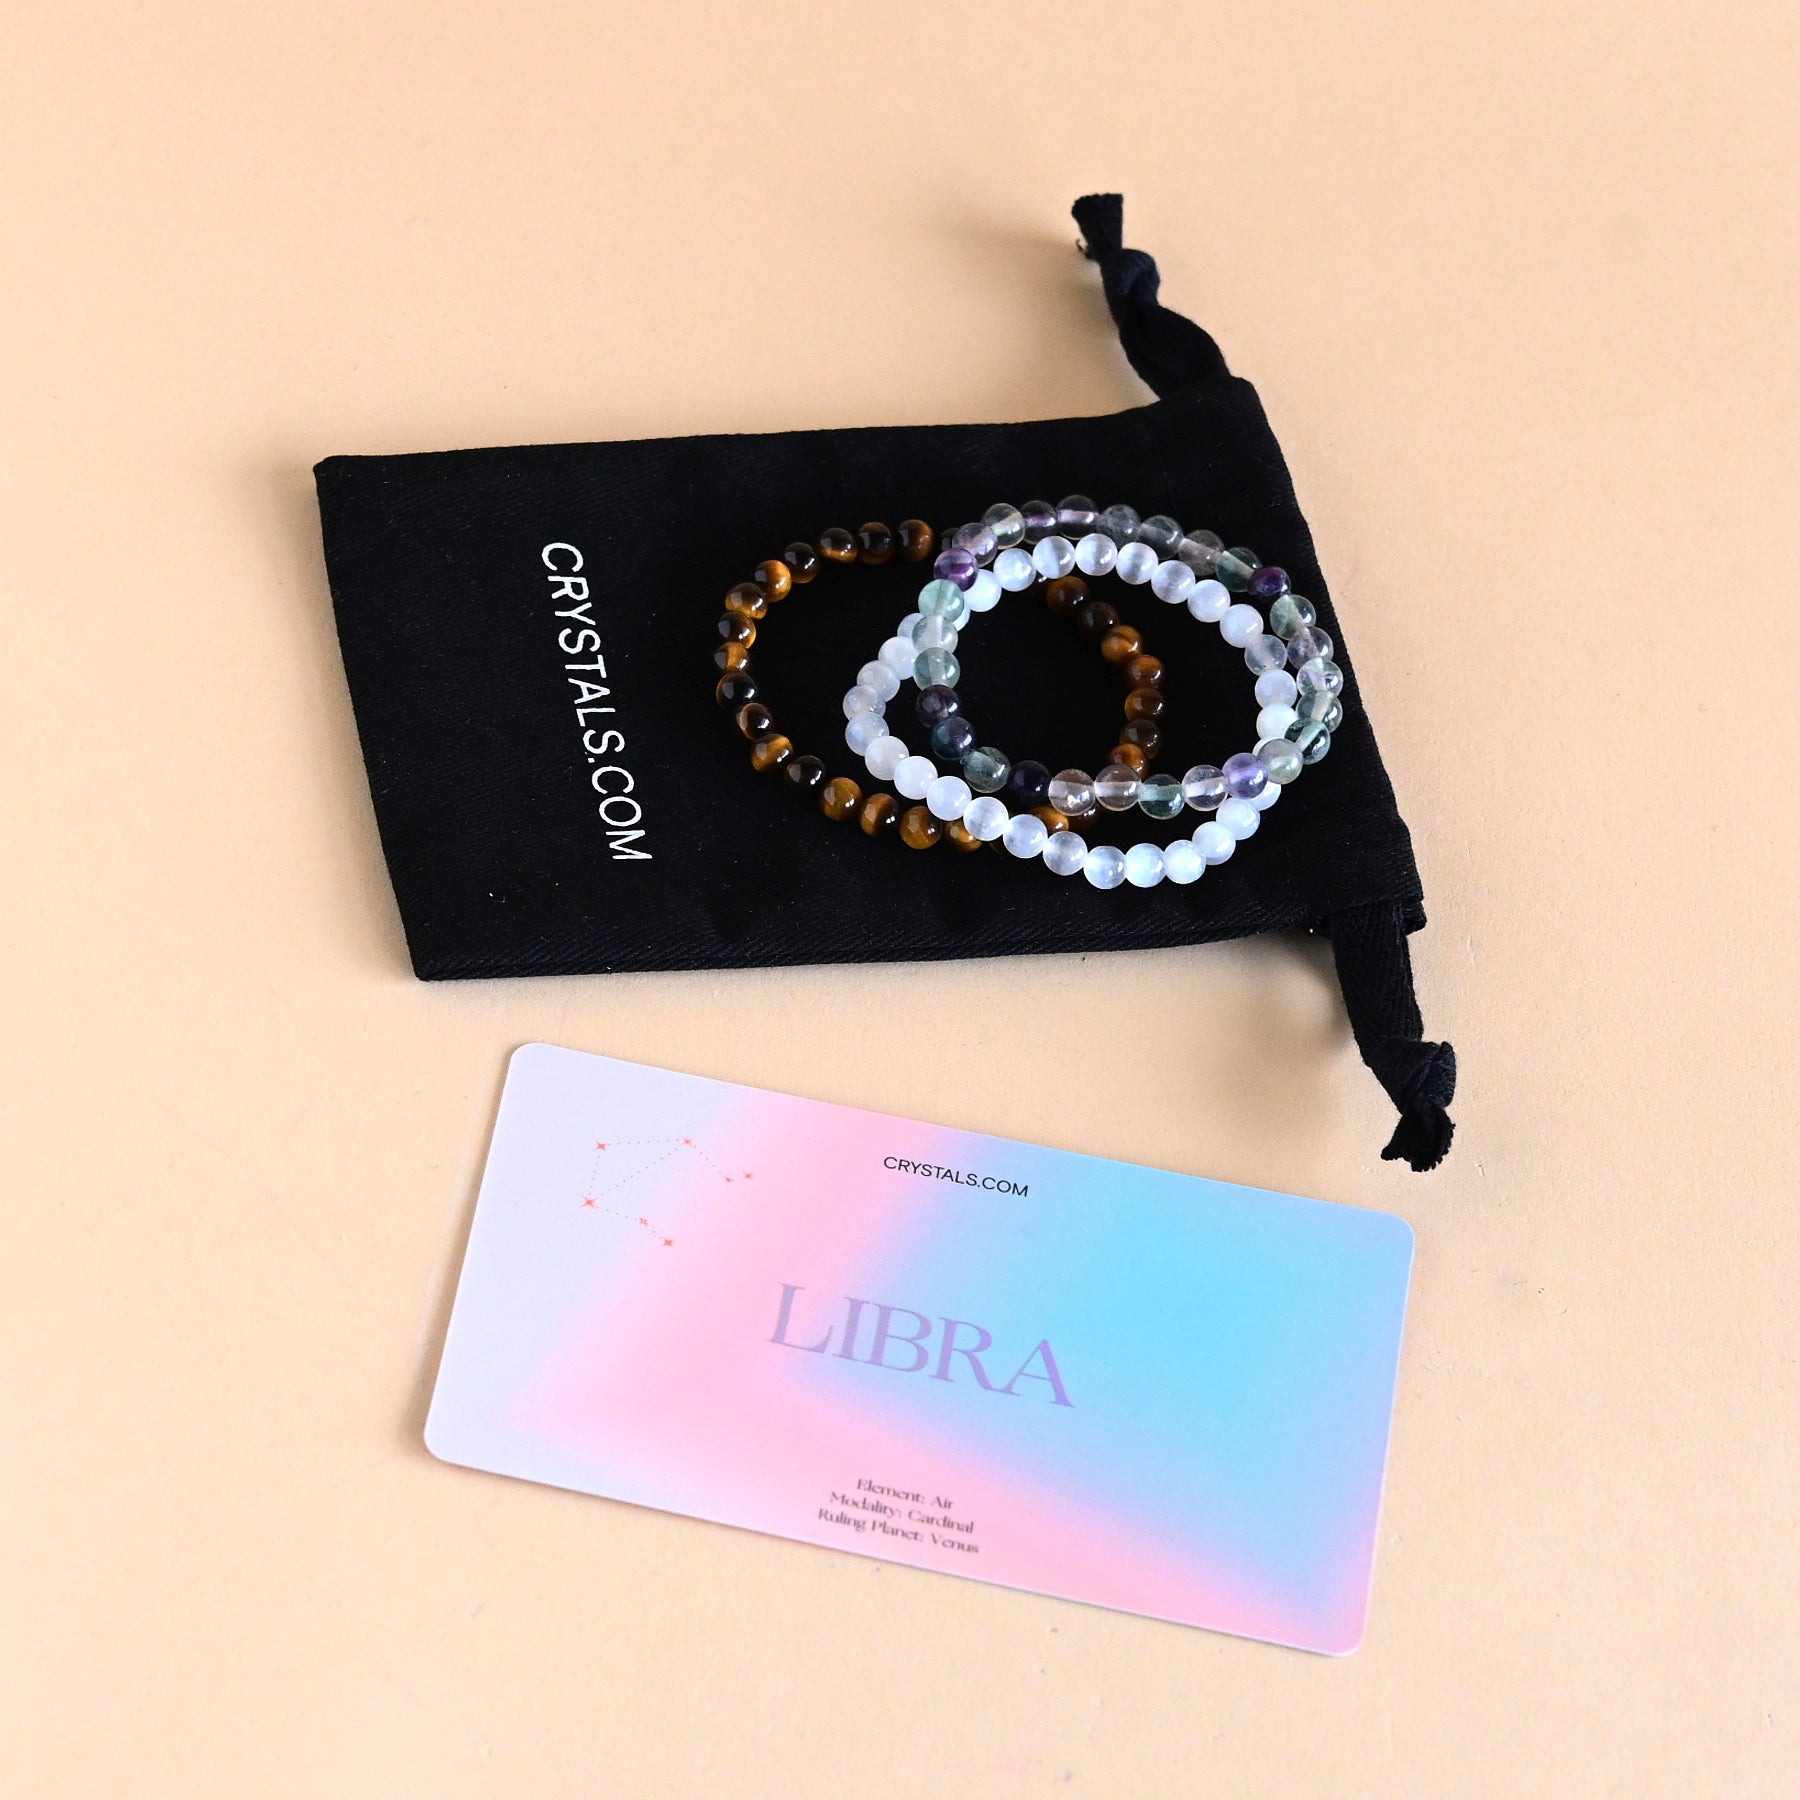 Buy Libra bracelet in silver Online in India at Best Price - Jewelslane